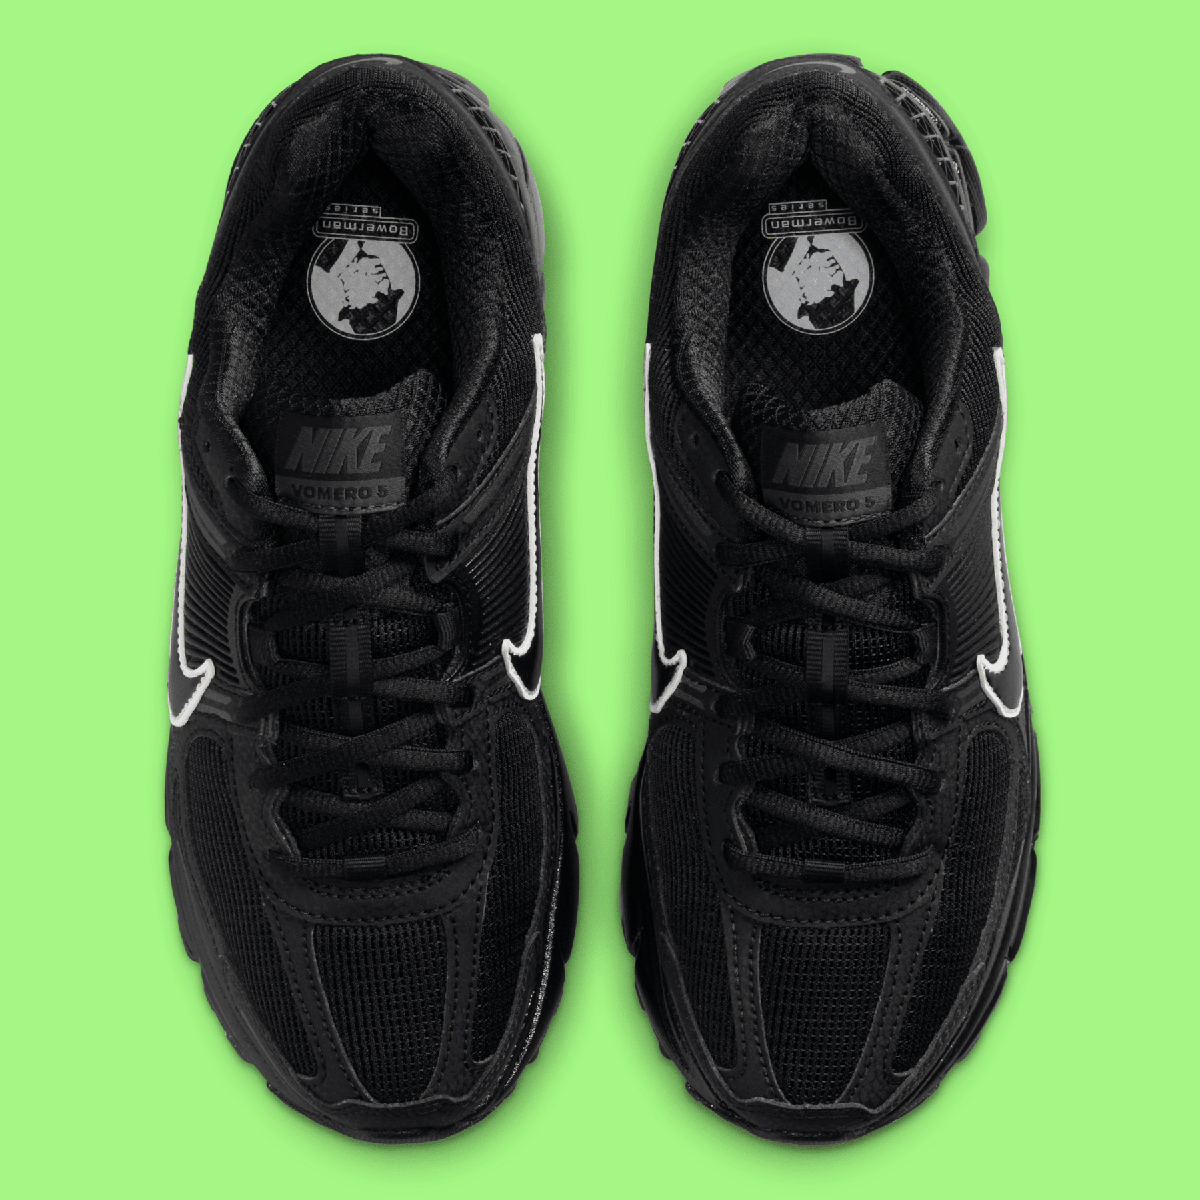 Nike Zoom Vomero 5 Black White Hm9986 001 2